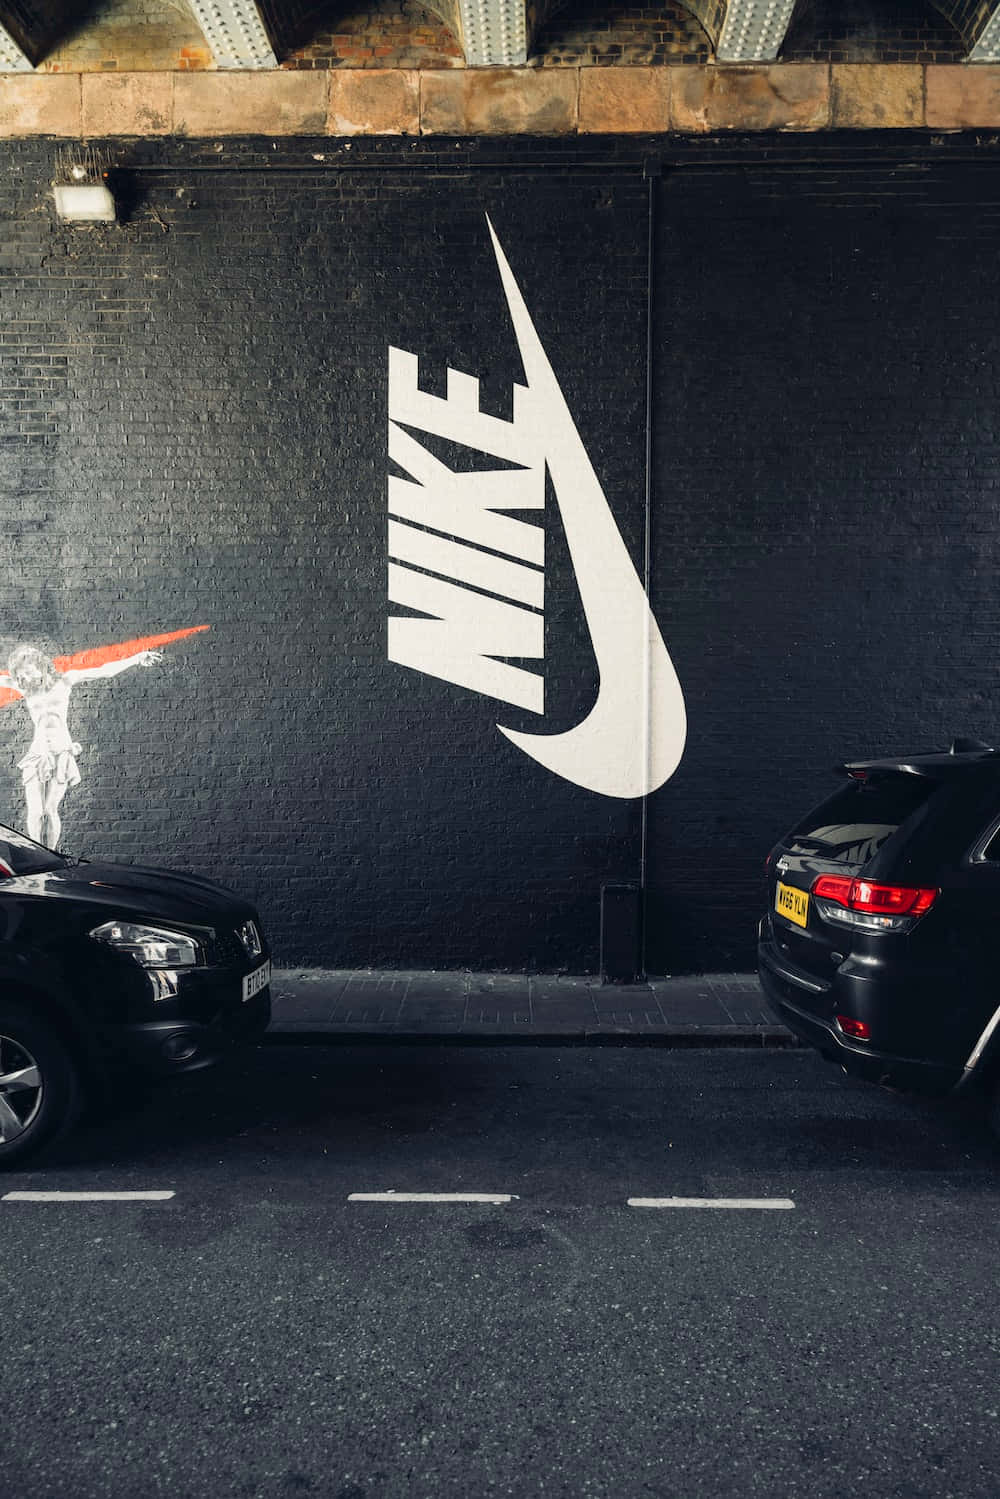 Ensvart Bil Parkerad Framför En Nike-vägg.